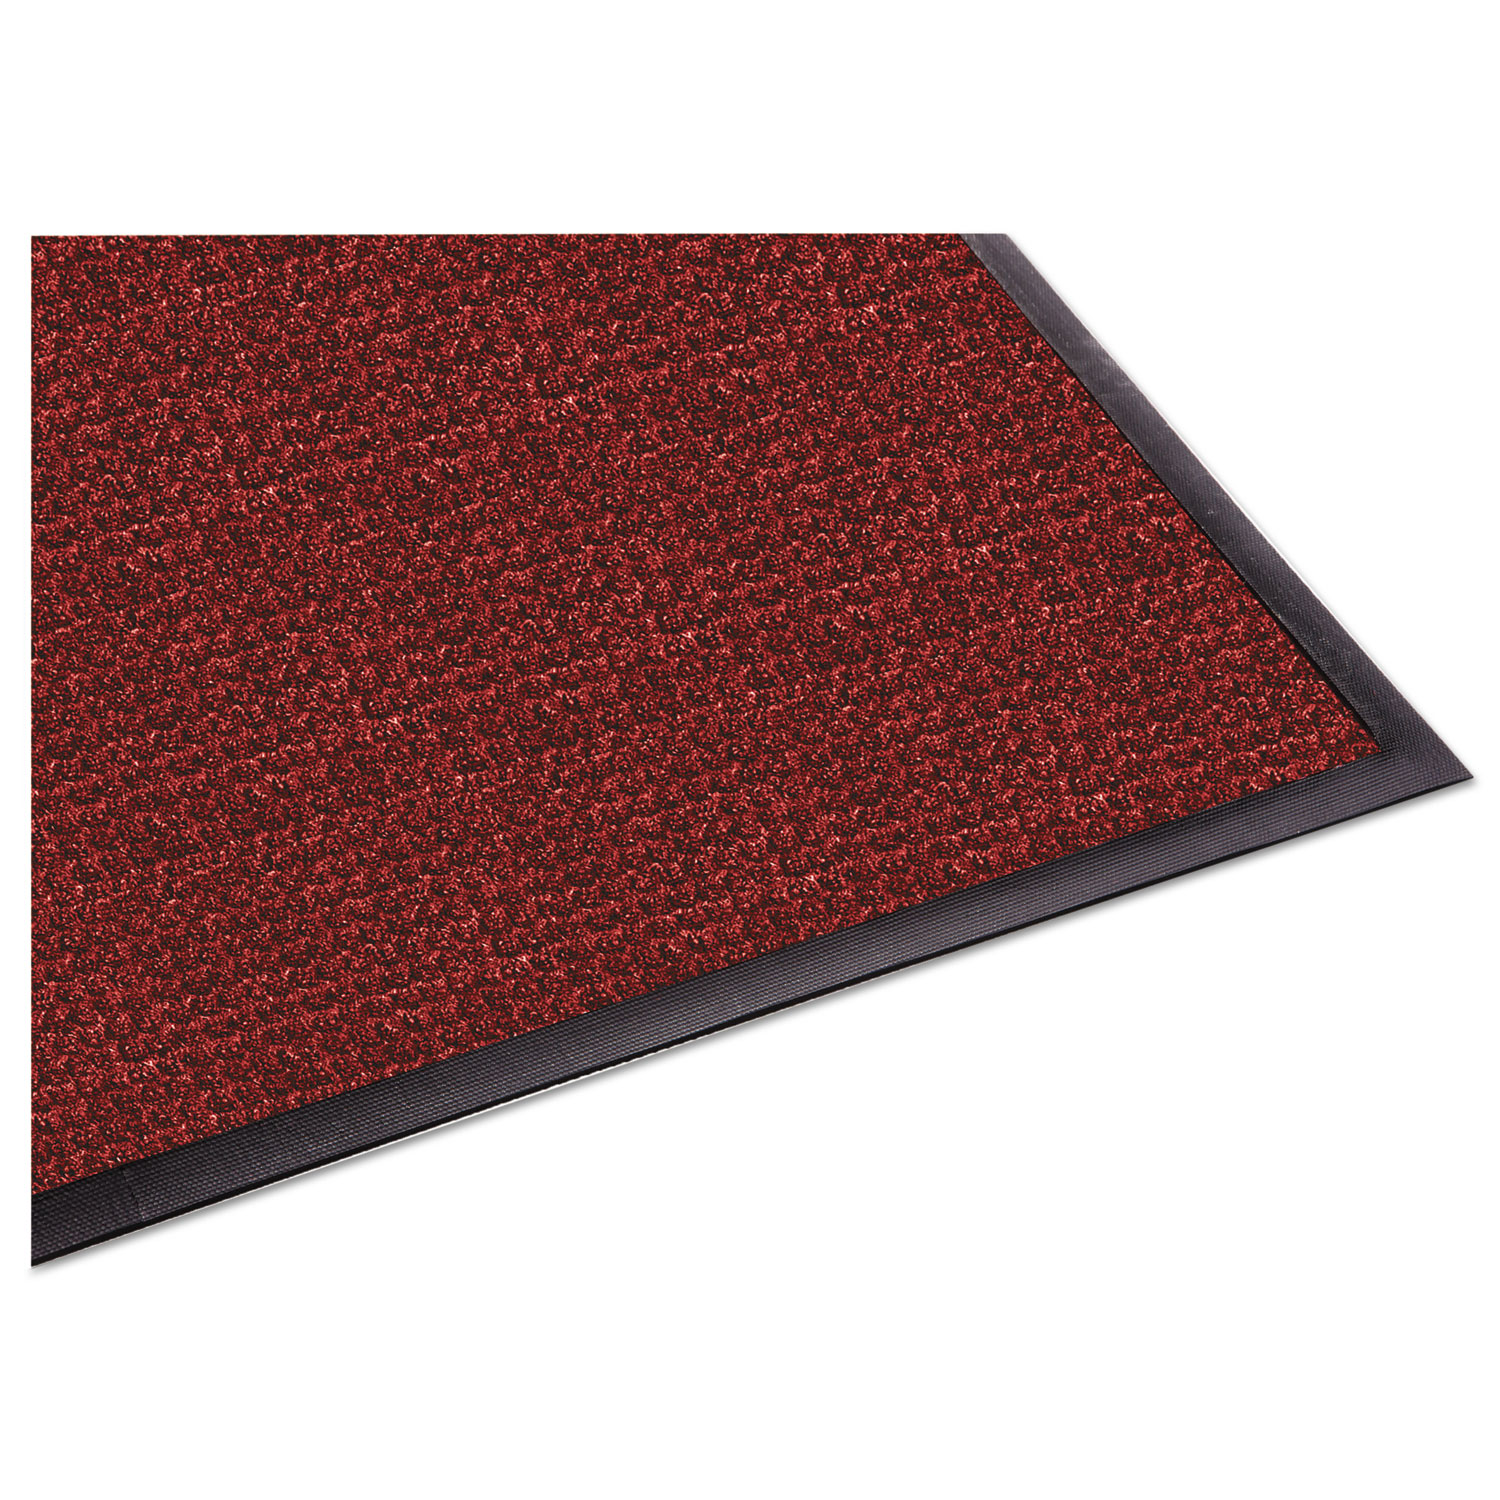  Guardian WG031012 WaterGuard Indoor/Outdoor Scraper Mat, 36 x 120, Red (MLLWG031012) 